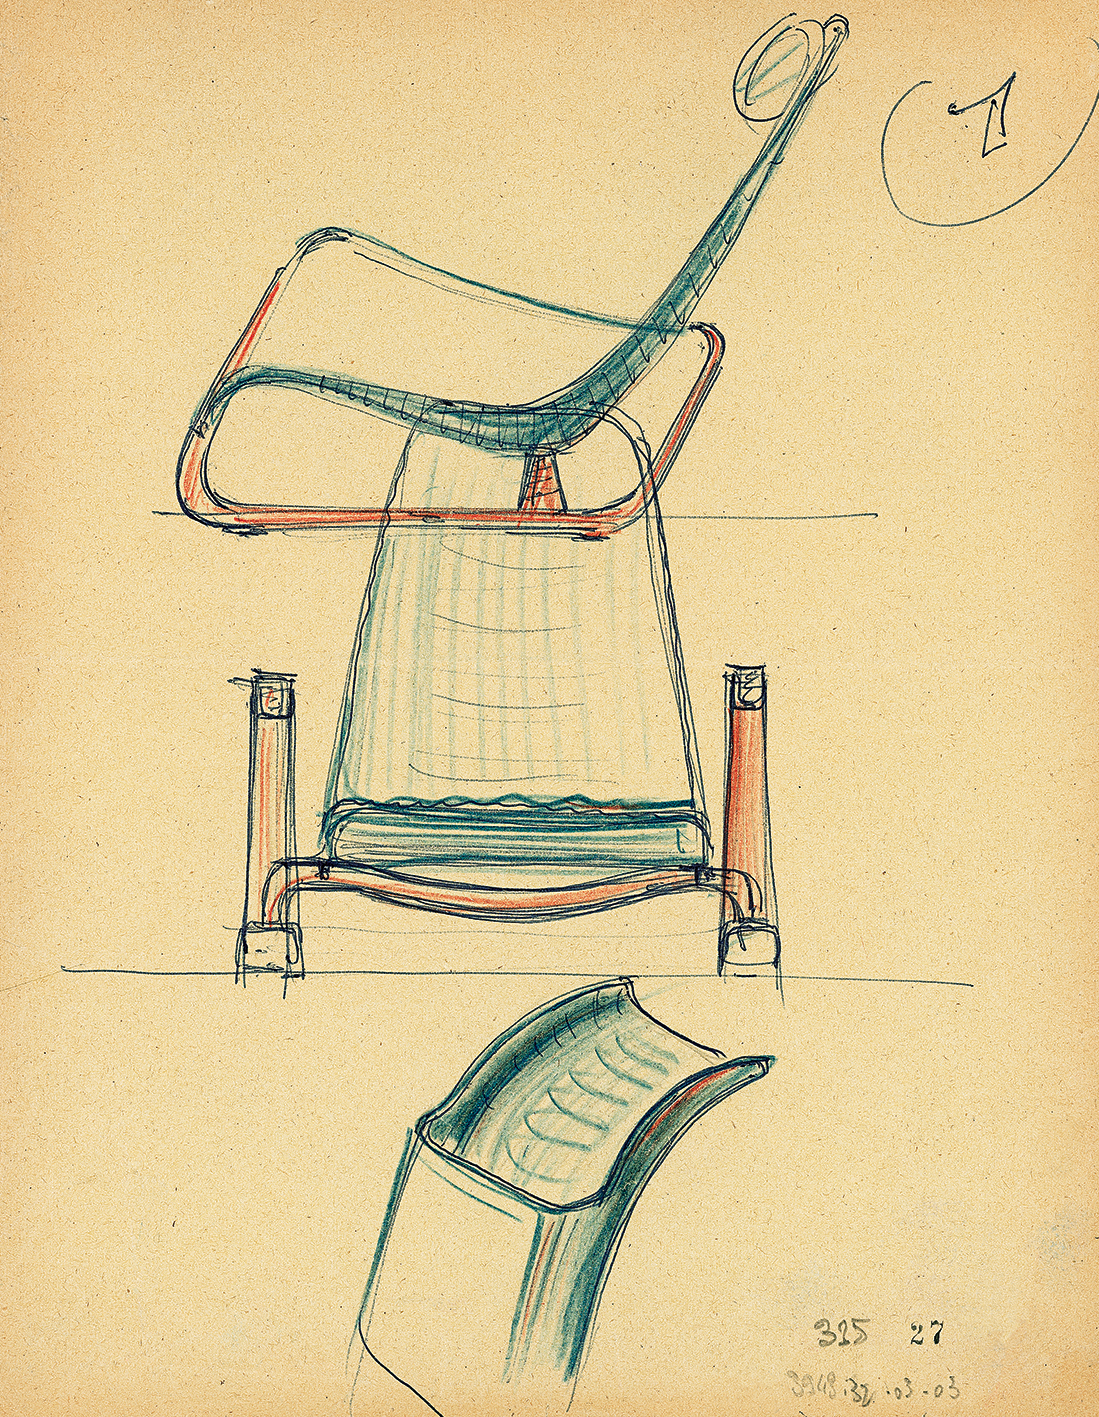 Cité armchair, 1930. Sketch by Jean Prouvé for his classes at CNAM, Paris, 1957–1971.